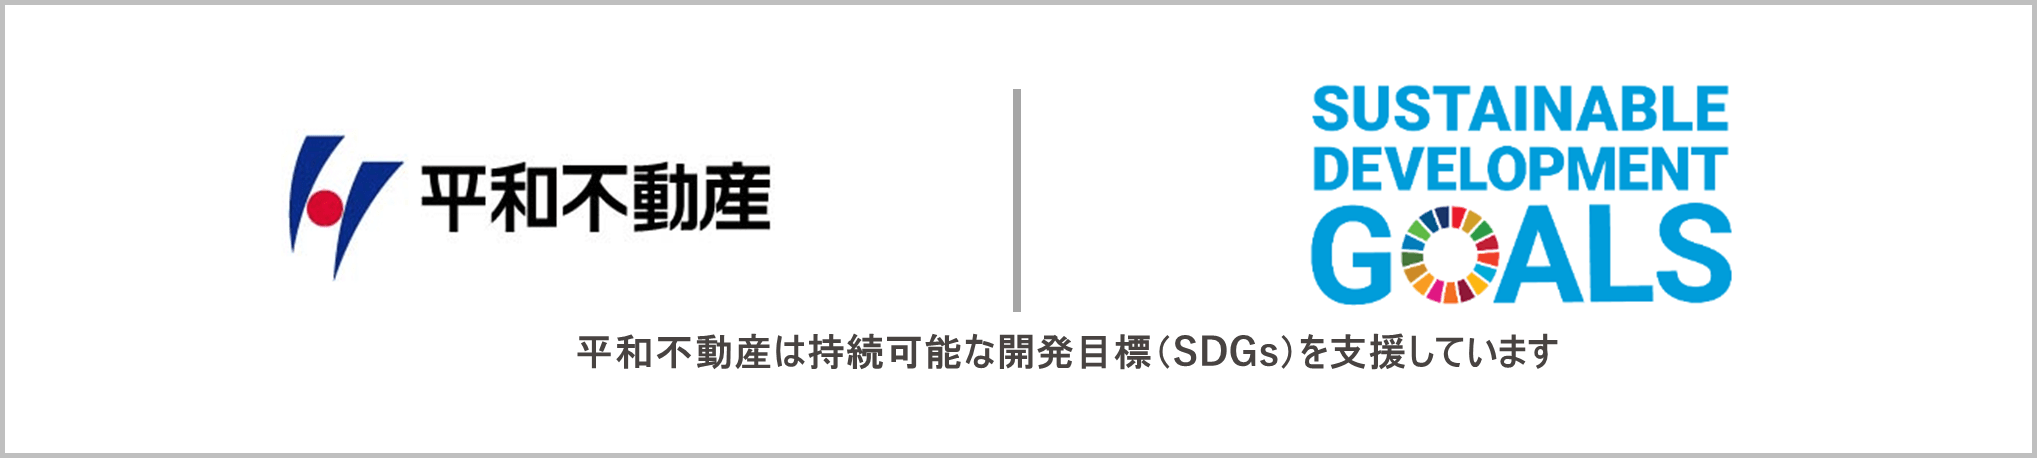 平和不動産株式会社-SDGs（持続可能な開発目標）への取り組み